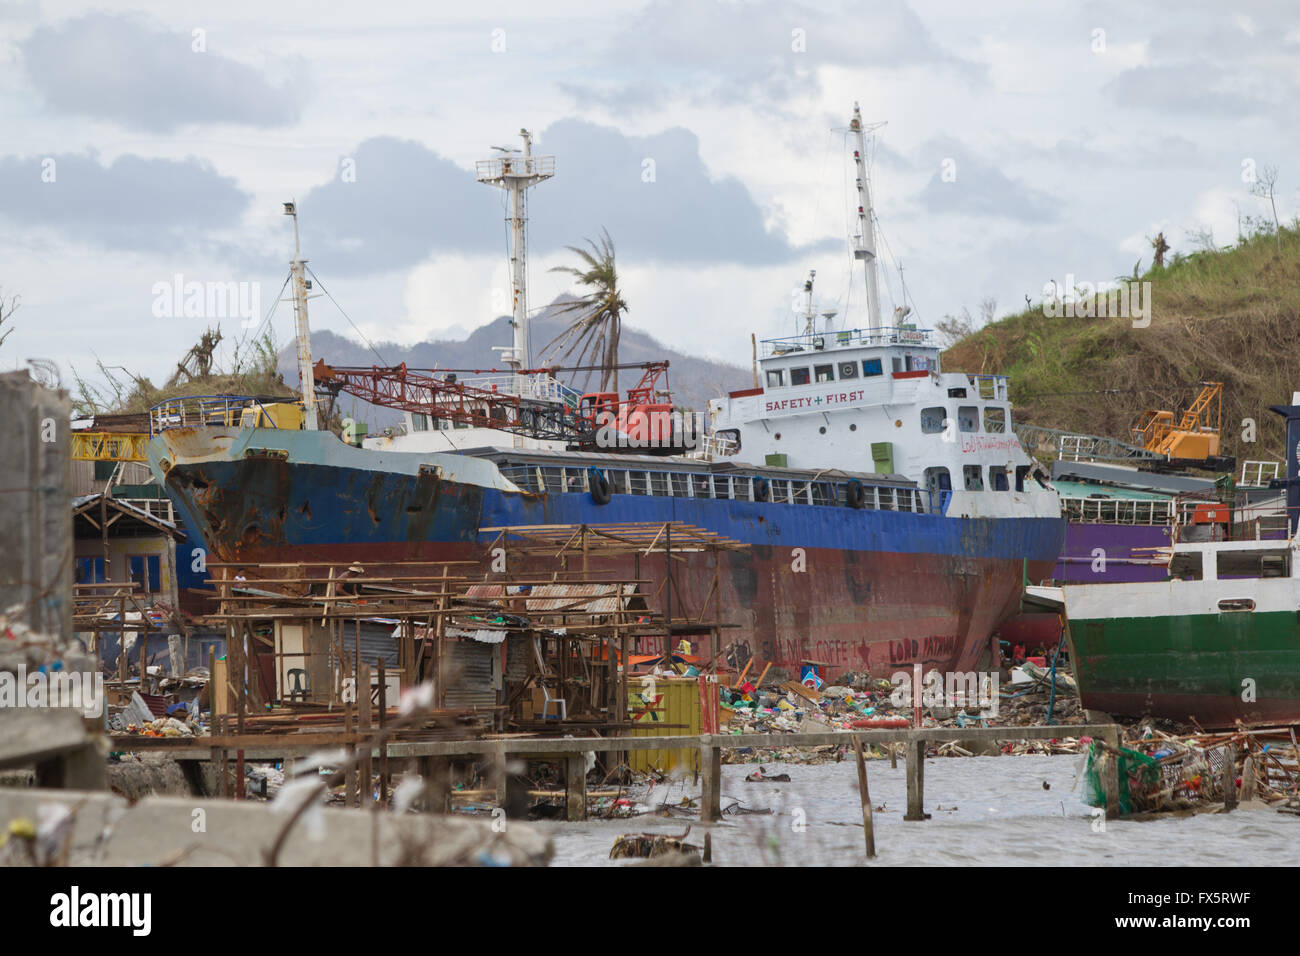 Le 8 novembre 2013, le typhon Haiyan,(connu sous le nom de Yolanda aux Philippines).Cette image prise deux semaines après l'événement. Banque D'Images